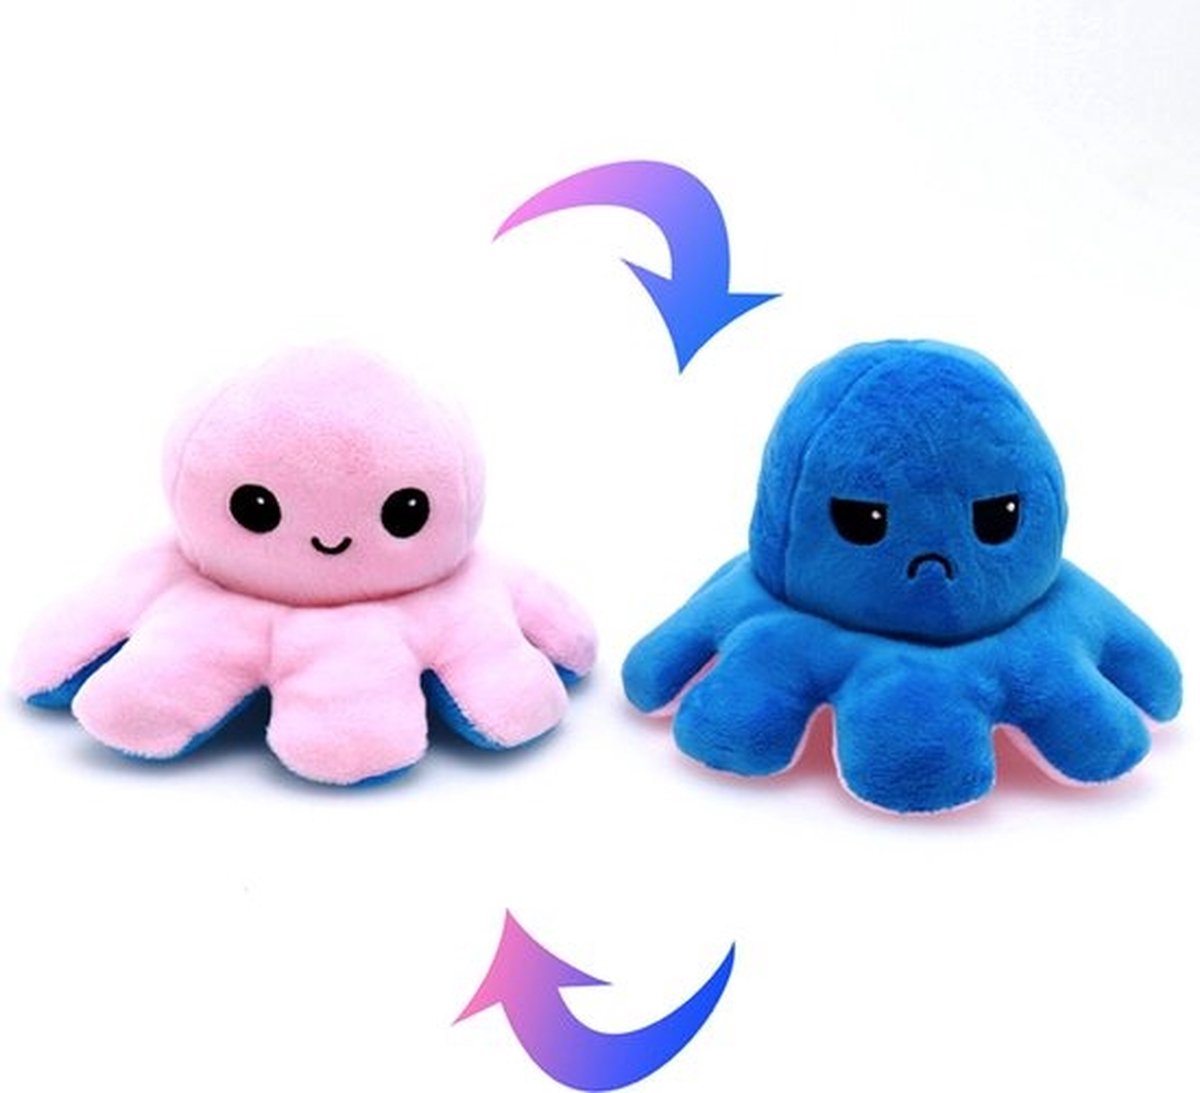 Knuffel Octopus Roze/Blauw  - Mood Knuffel Omkeerbaar - Reversible Octopus - Octopus Knuffel - Emotie Knuffel - Verwisselbaar - Blij en Boos knuffel - Merkloos